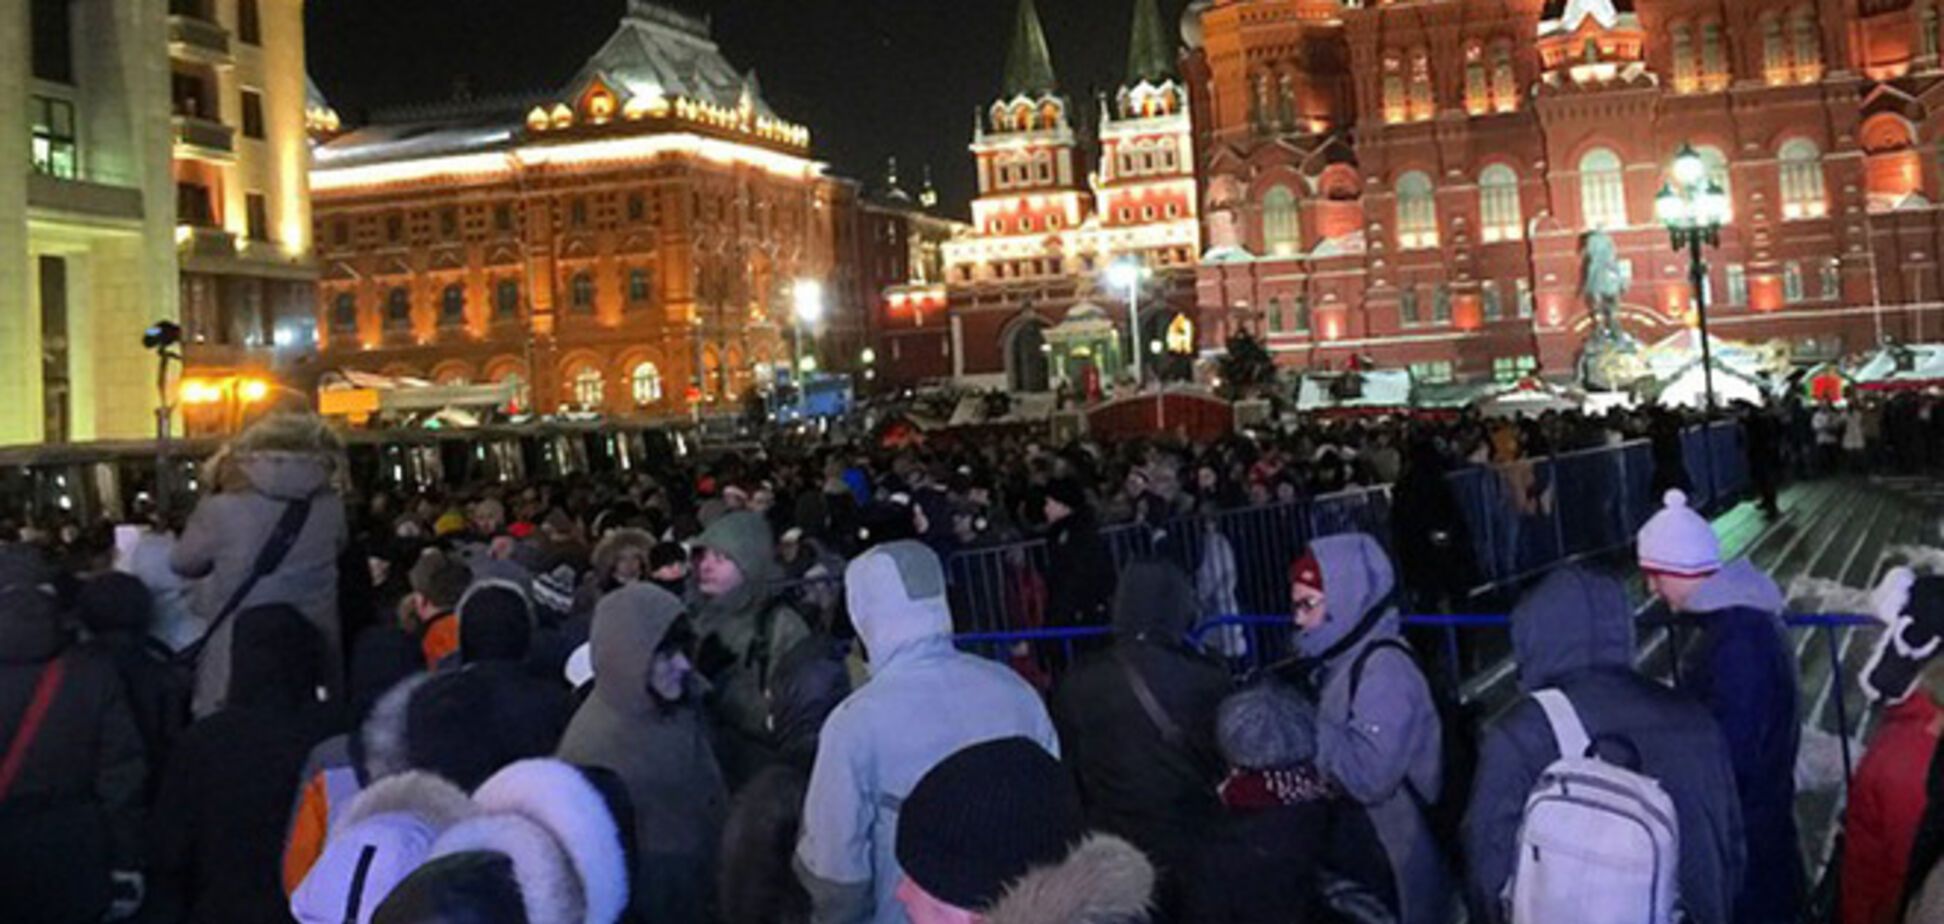 Российская власть боится Майдана, но Путина уберут не сейчас - эксперты